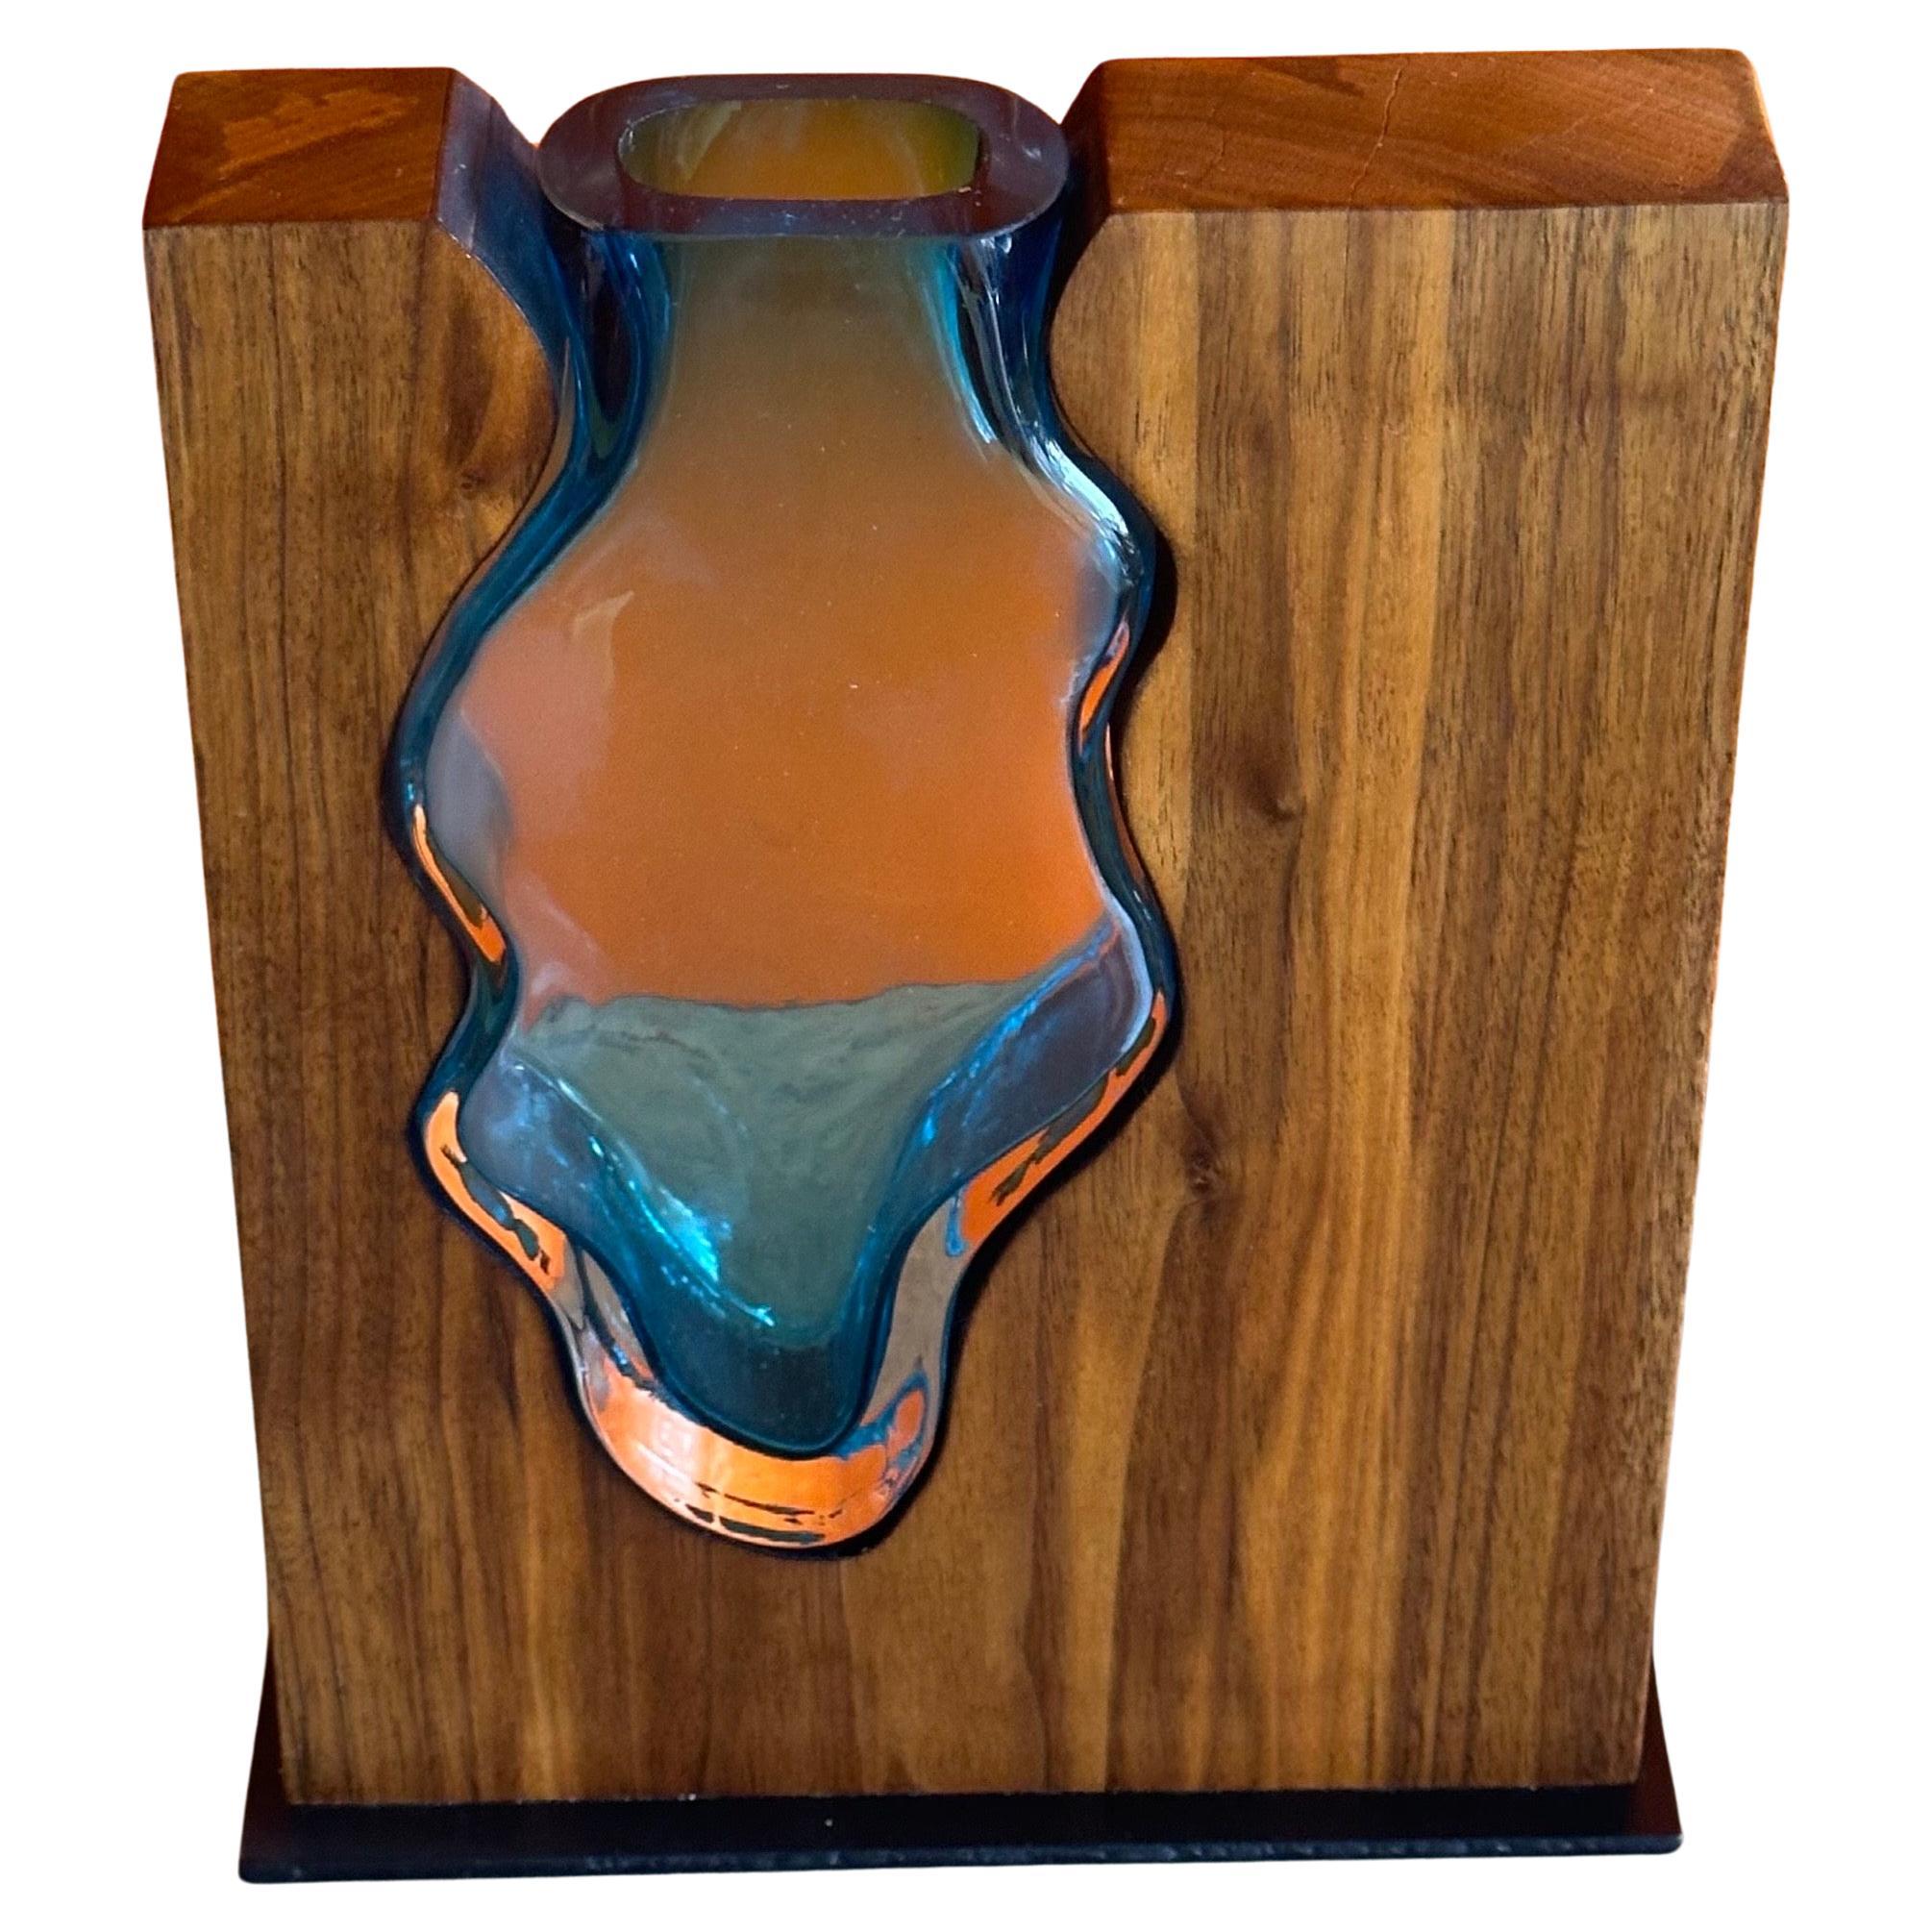 Eine wunderschöne Vase aus Walnussholz und smaragdgrünem Kunstglas von Scott Slagerman, ca. 2022.  Die schlichte und elegante Vase wird von Hand gefertigt, indem eine mundgeblasene Kunstglasvase in einen Walnussholzblock eingesetzt wird.  Das Stück